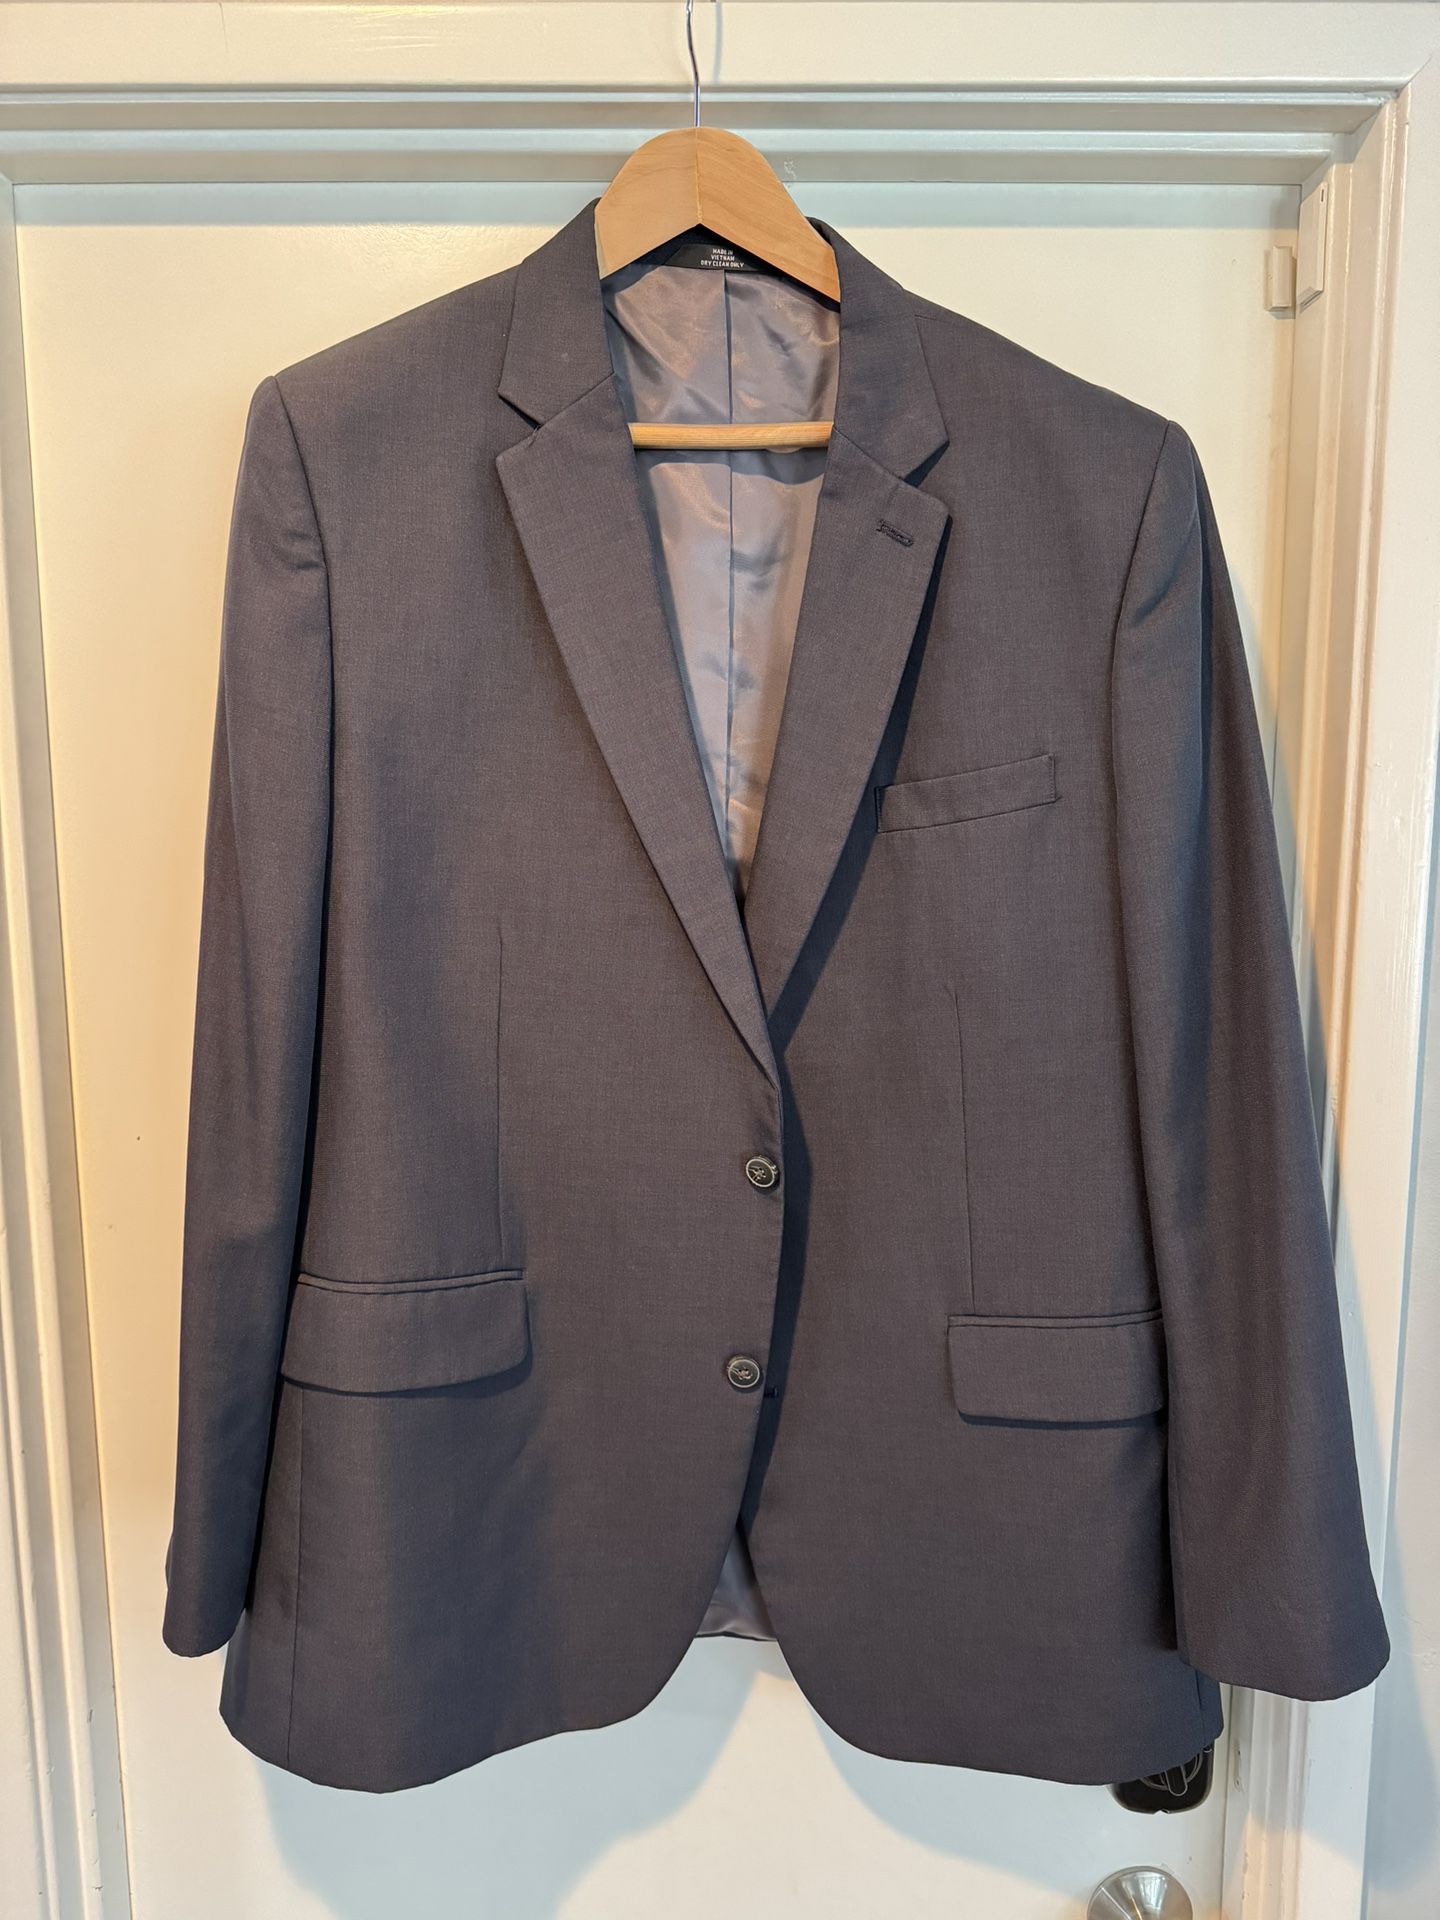 Men’s Business Suit Jackets, Pants, Shirts & Ties